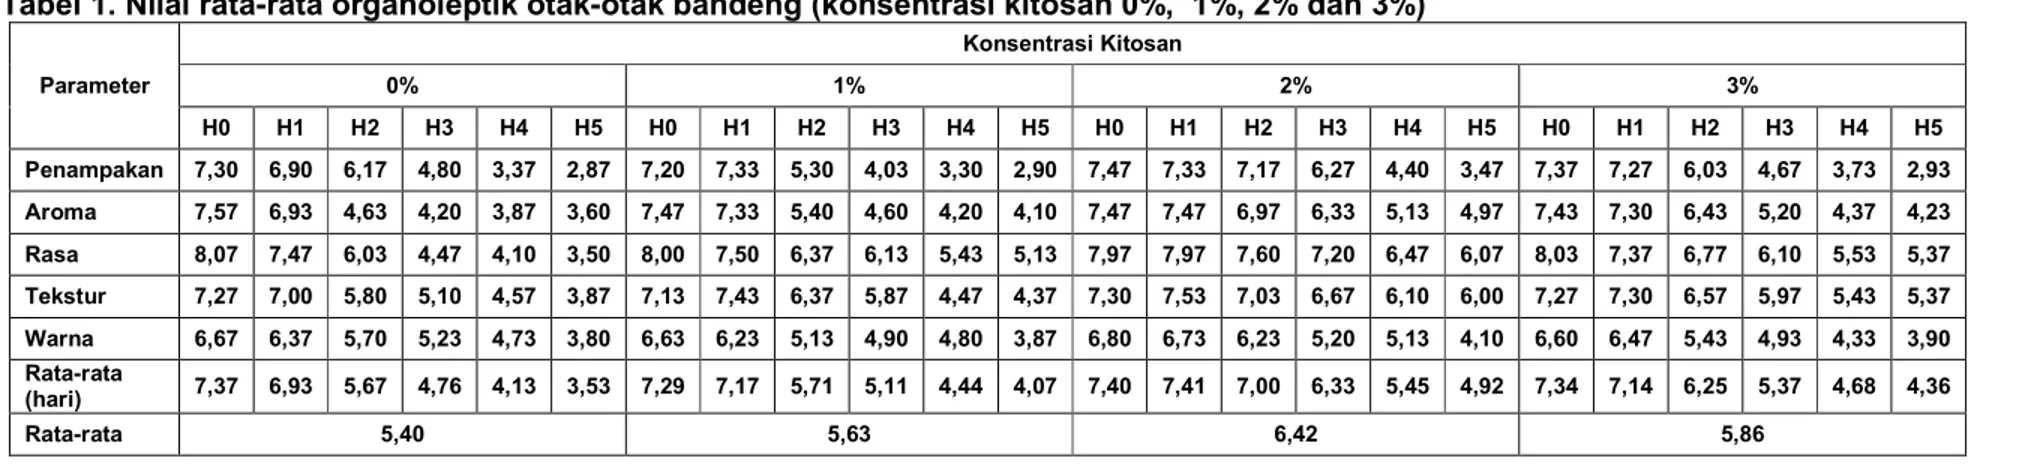 Tabel 1. Nilai rata-rata organoleptik otak-otak bandeng (konsentrasi kitosan 0%,  1%, 2% dan 3%)  Parameter  Konsentrasi Kitosan 0% 1%  2%  3%  H0  H1  H2  H3  H4  H5  H0  H1  H2  H3  H4  H5  H0  H1  H2  H3  H4  H5  H0  H1  H2  H3  H4  H5  Penampakan  7,30